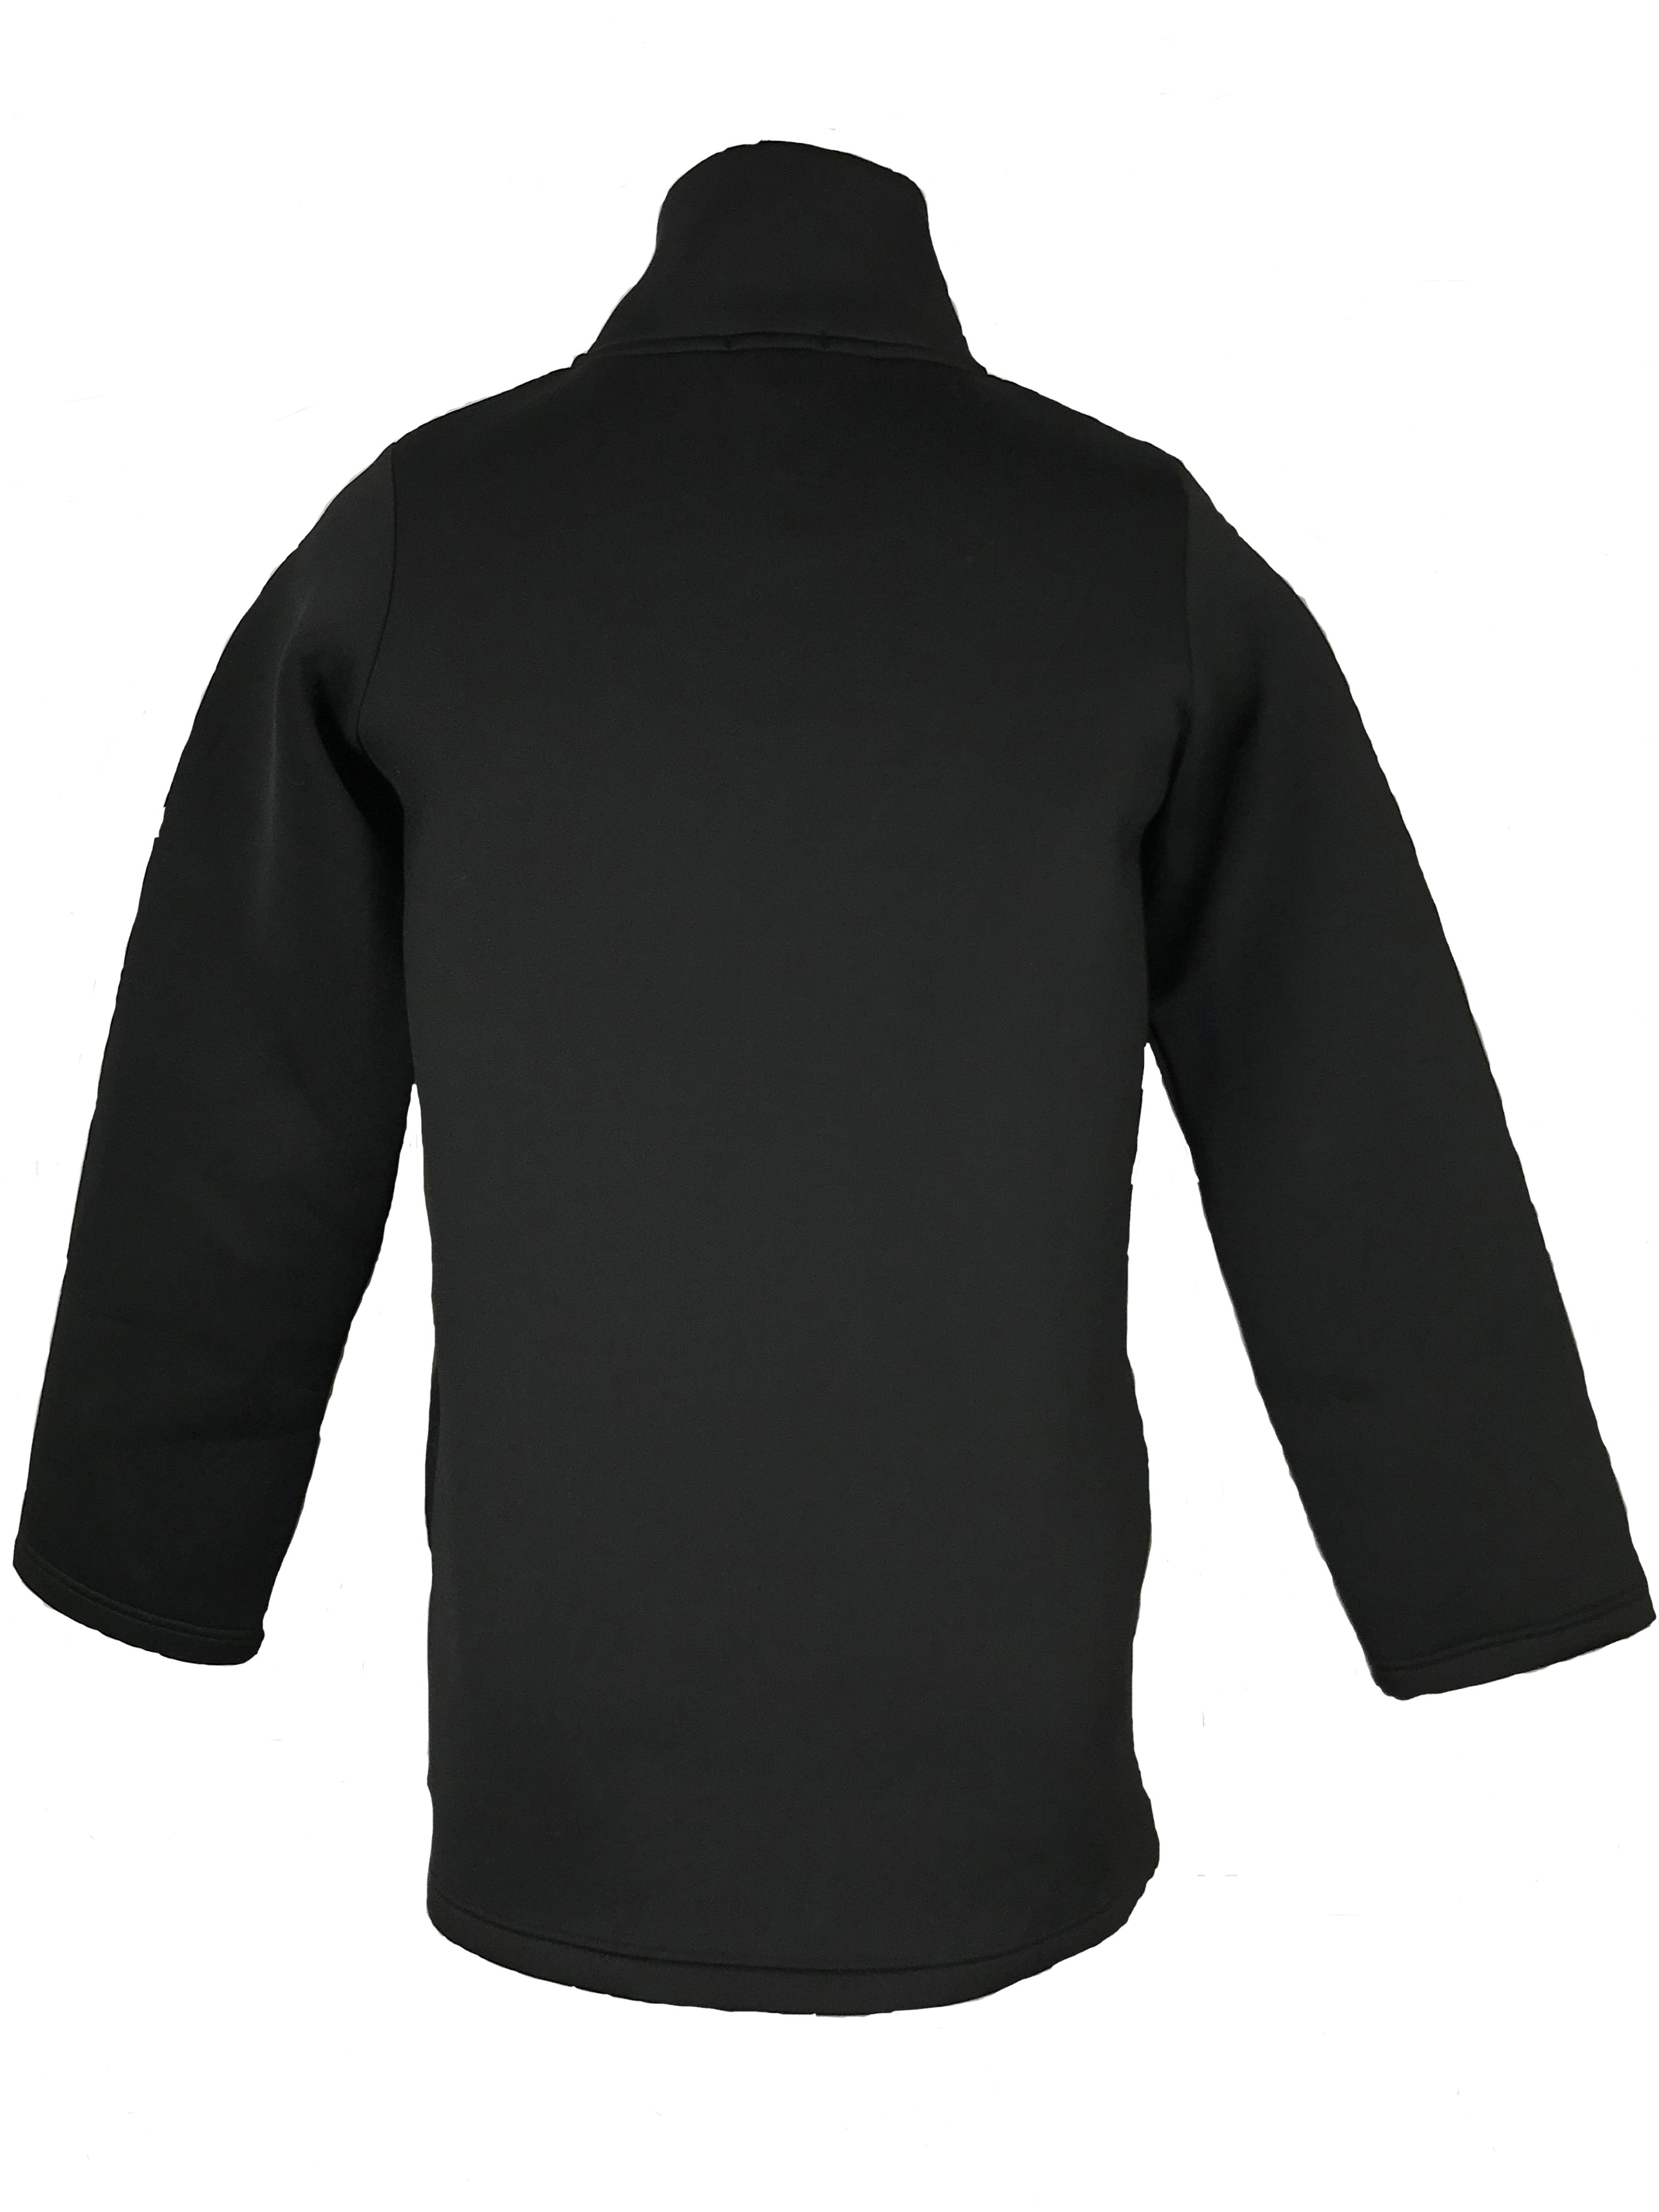 Zara Sport Black Zip Up Sweatshirt Men's Size S